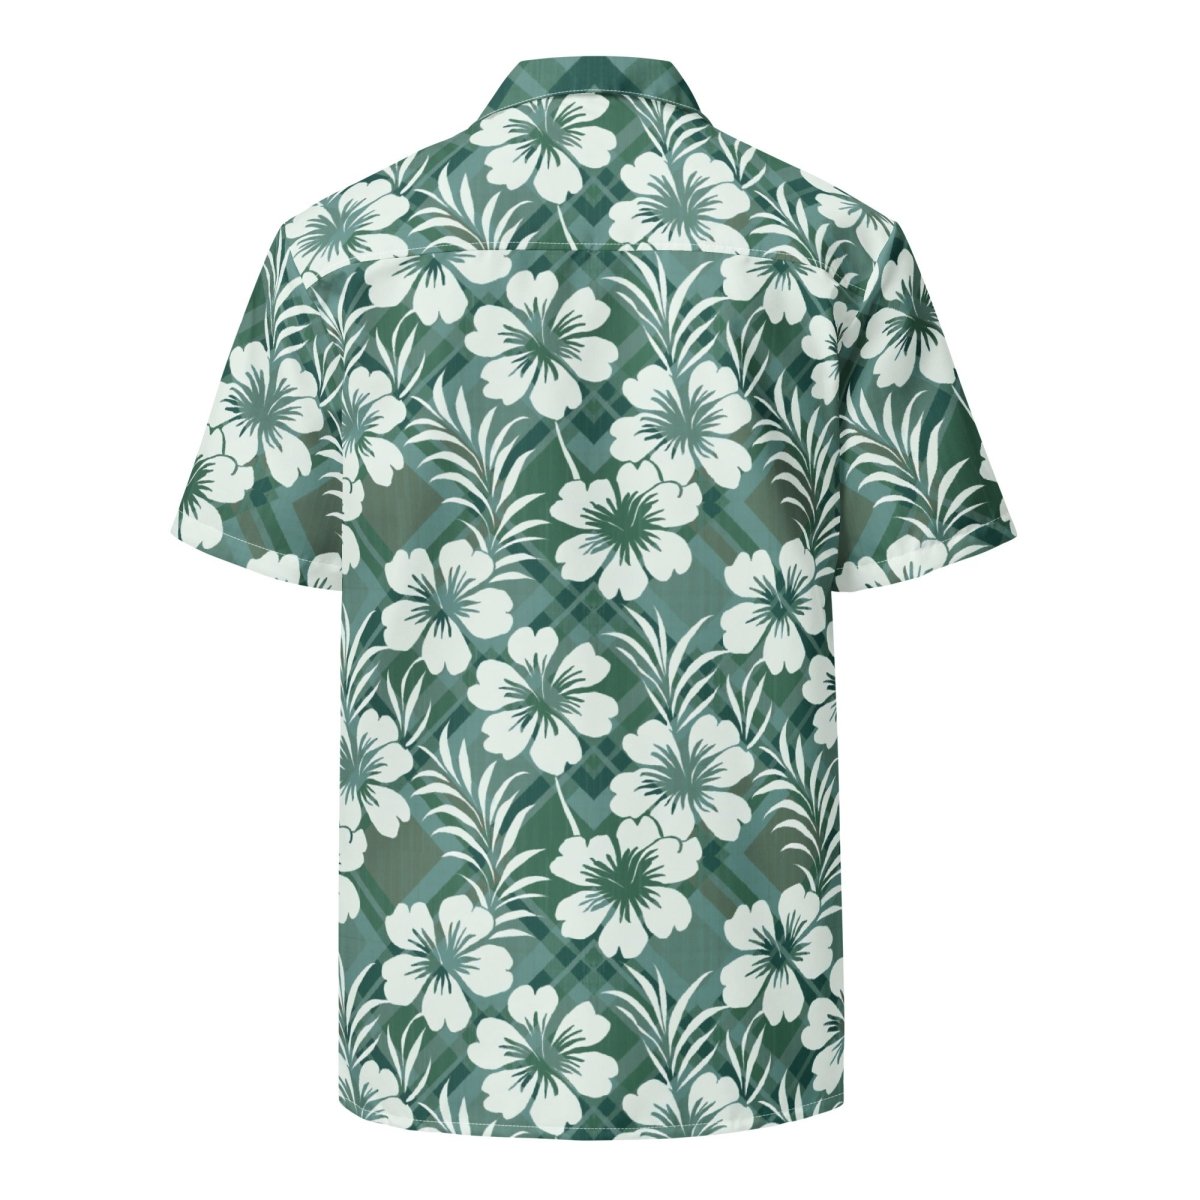 Island Phantom - Hawaiian Shirt - The Tiki Yard - Men's Hawaiian Shirt